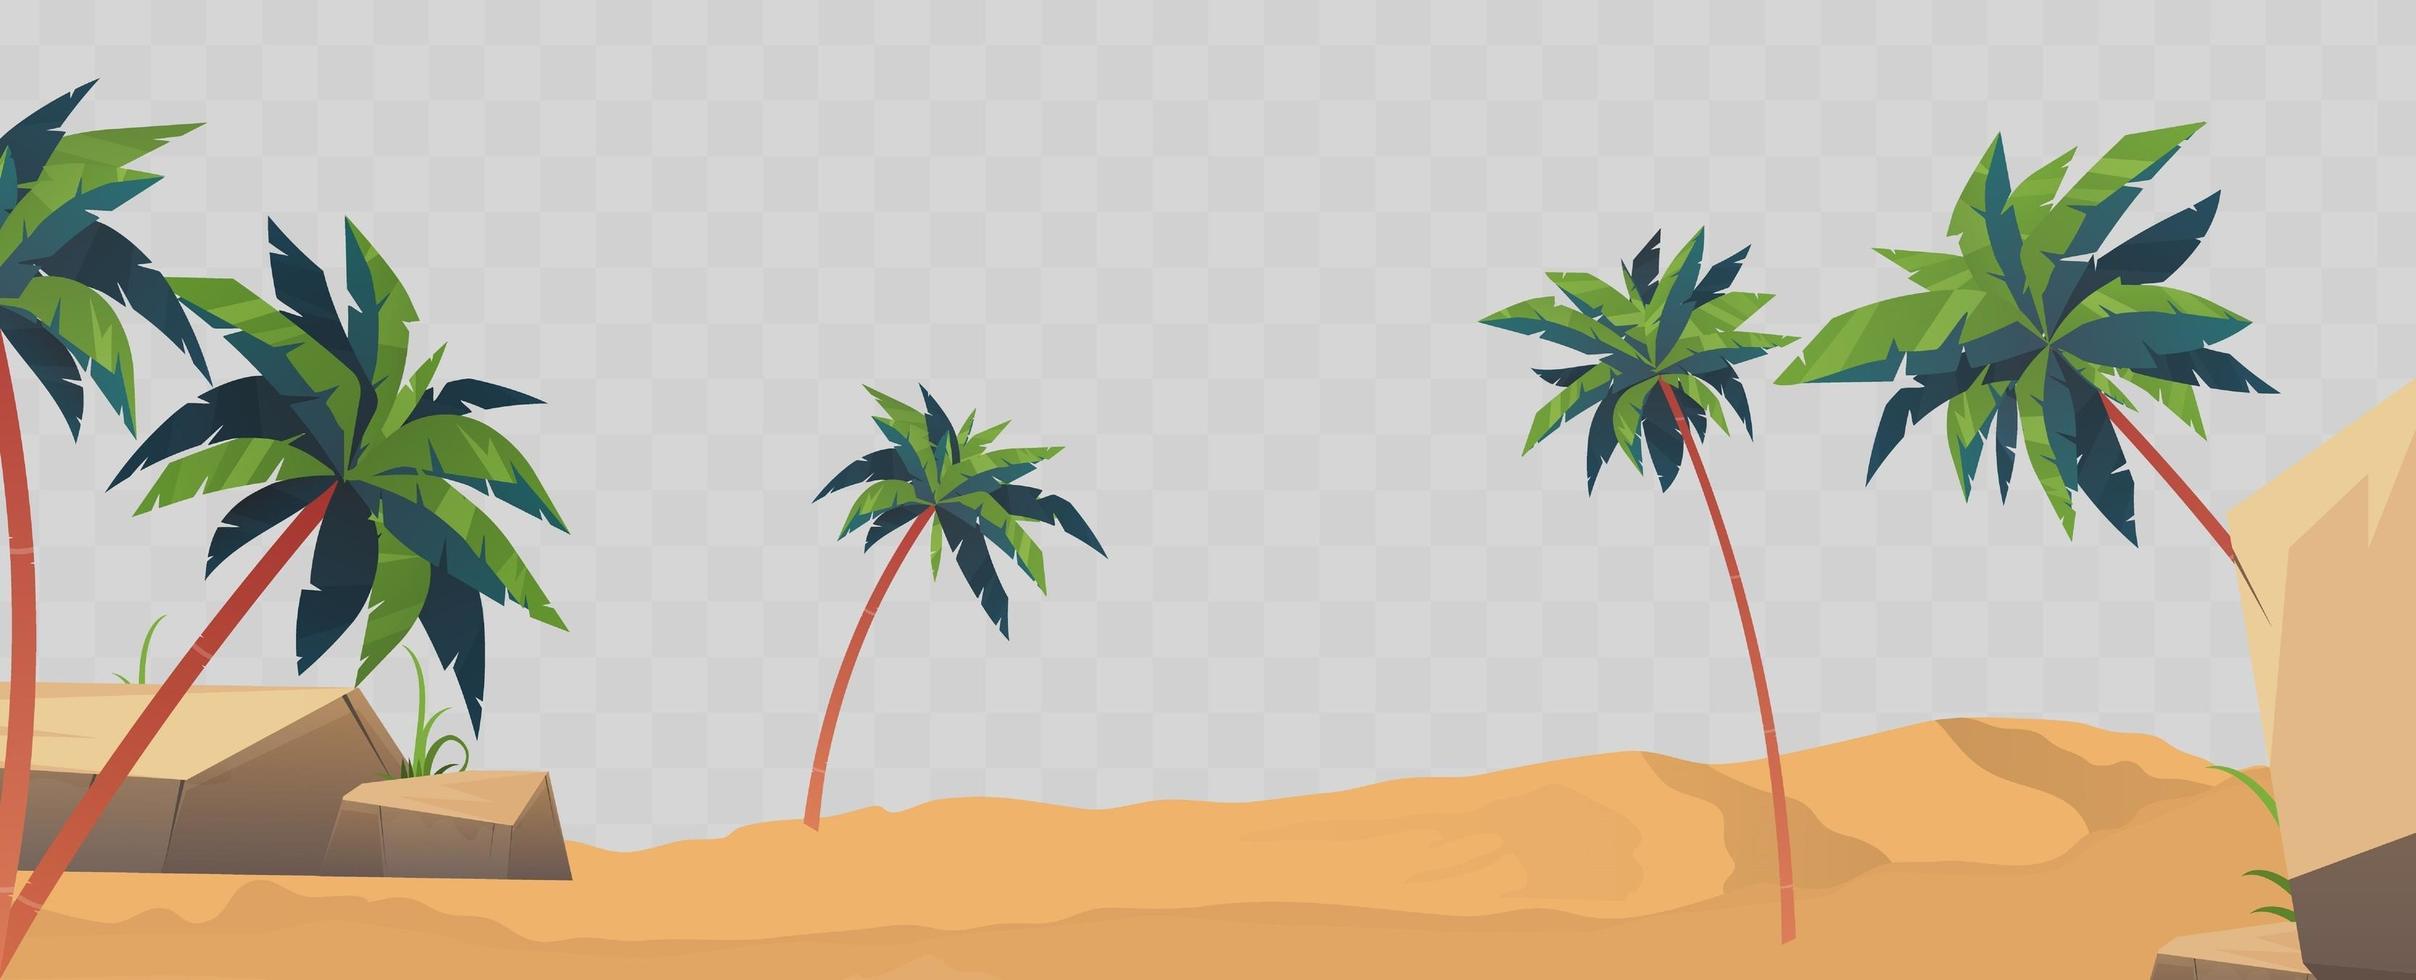 zand, strand en palmbomen geïsoleerd. element voor ontwerp op een zomerthema. vector